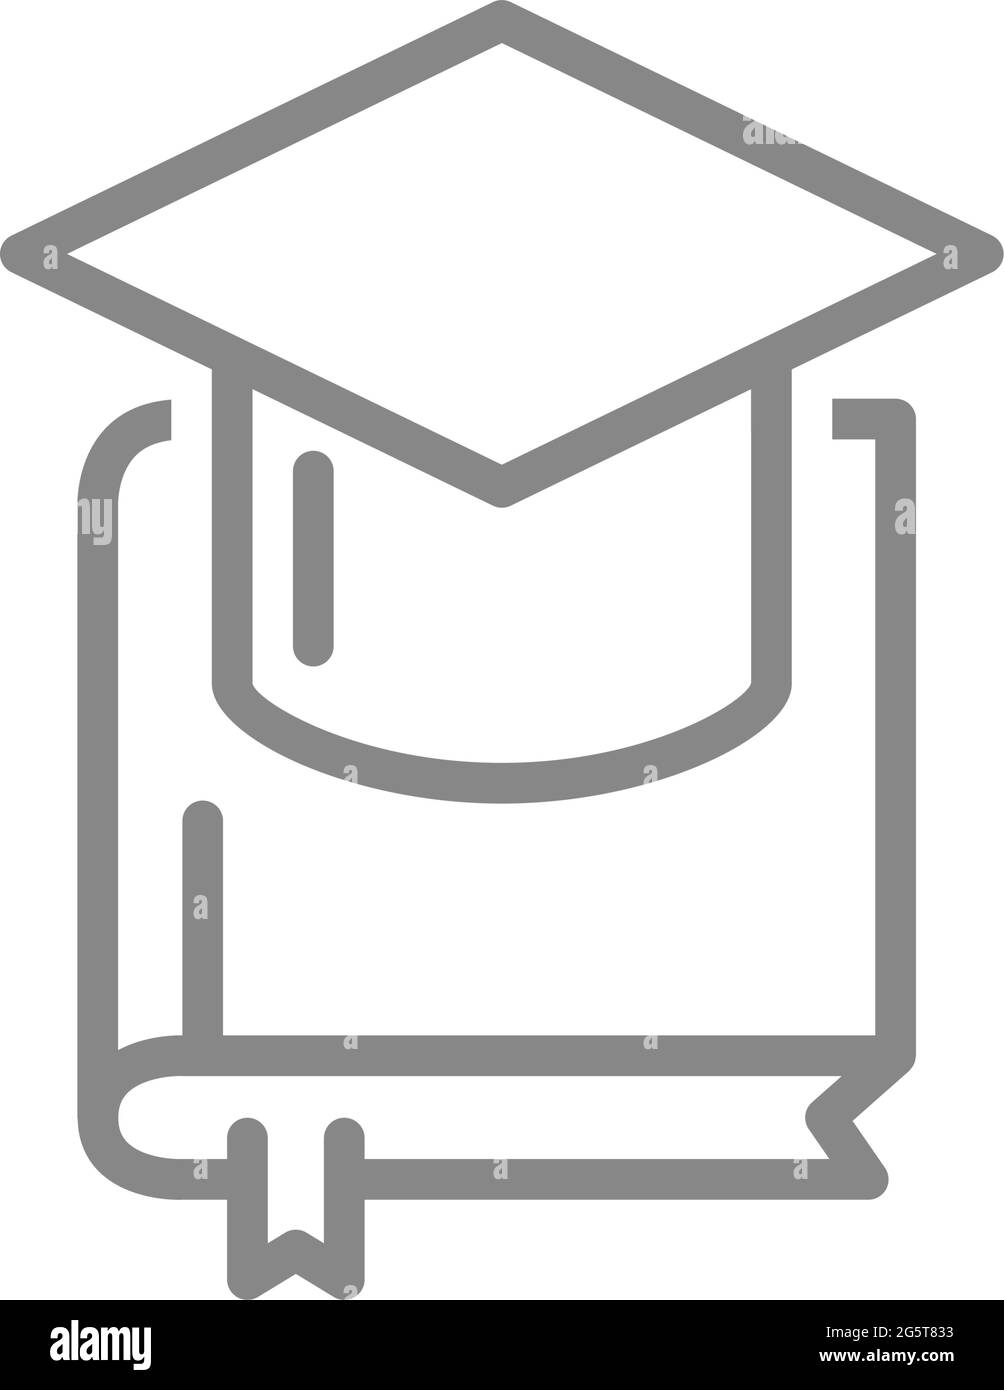 Buch mit Symbol für Abschlusskappe. Abschlussprüfung, Hochschule, Hochschulbildung Symbol Stock Vektor